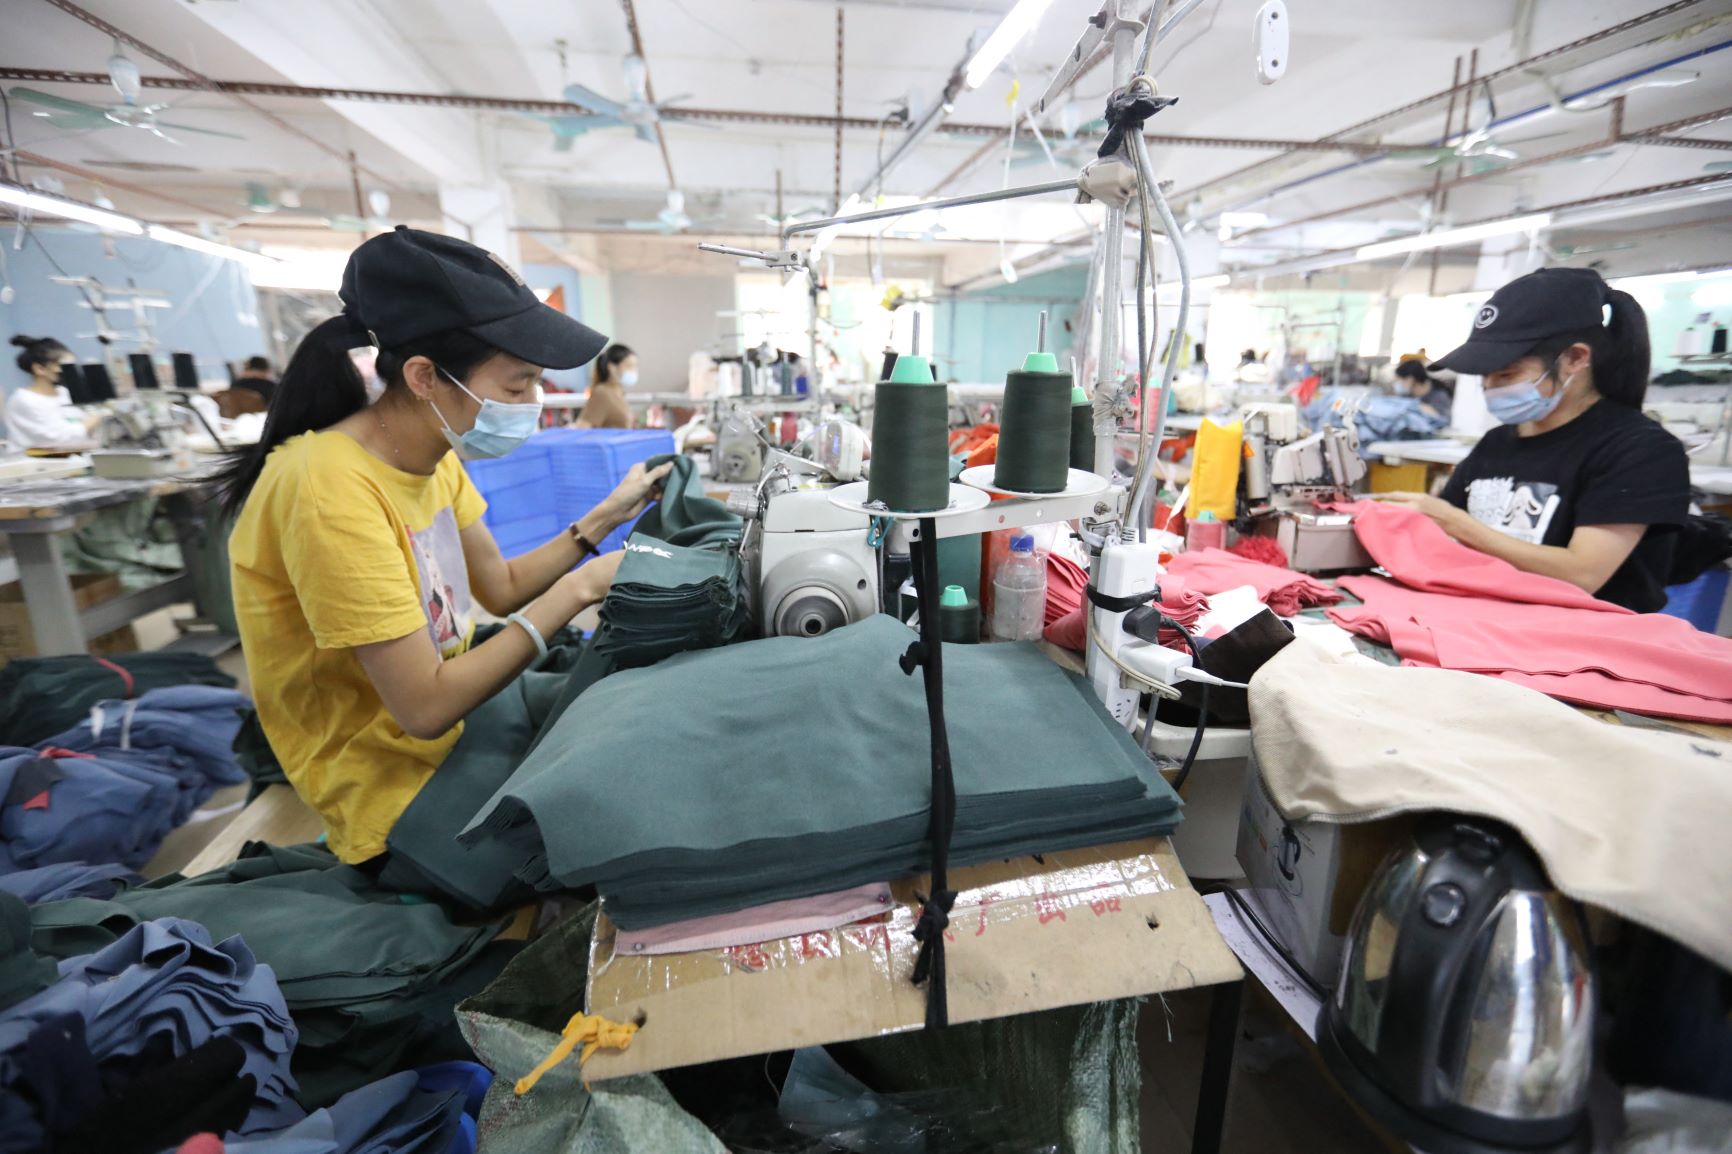 Fábrica de roupas em Guangzhou, no sul da China: polo da indústria da moda no país pode submergir com crise climática e aumento do nível do mar (Foto: Zheng Jianxin / Imaginechina / AFP - 20/11/2020)